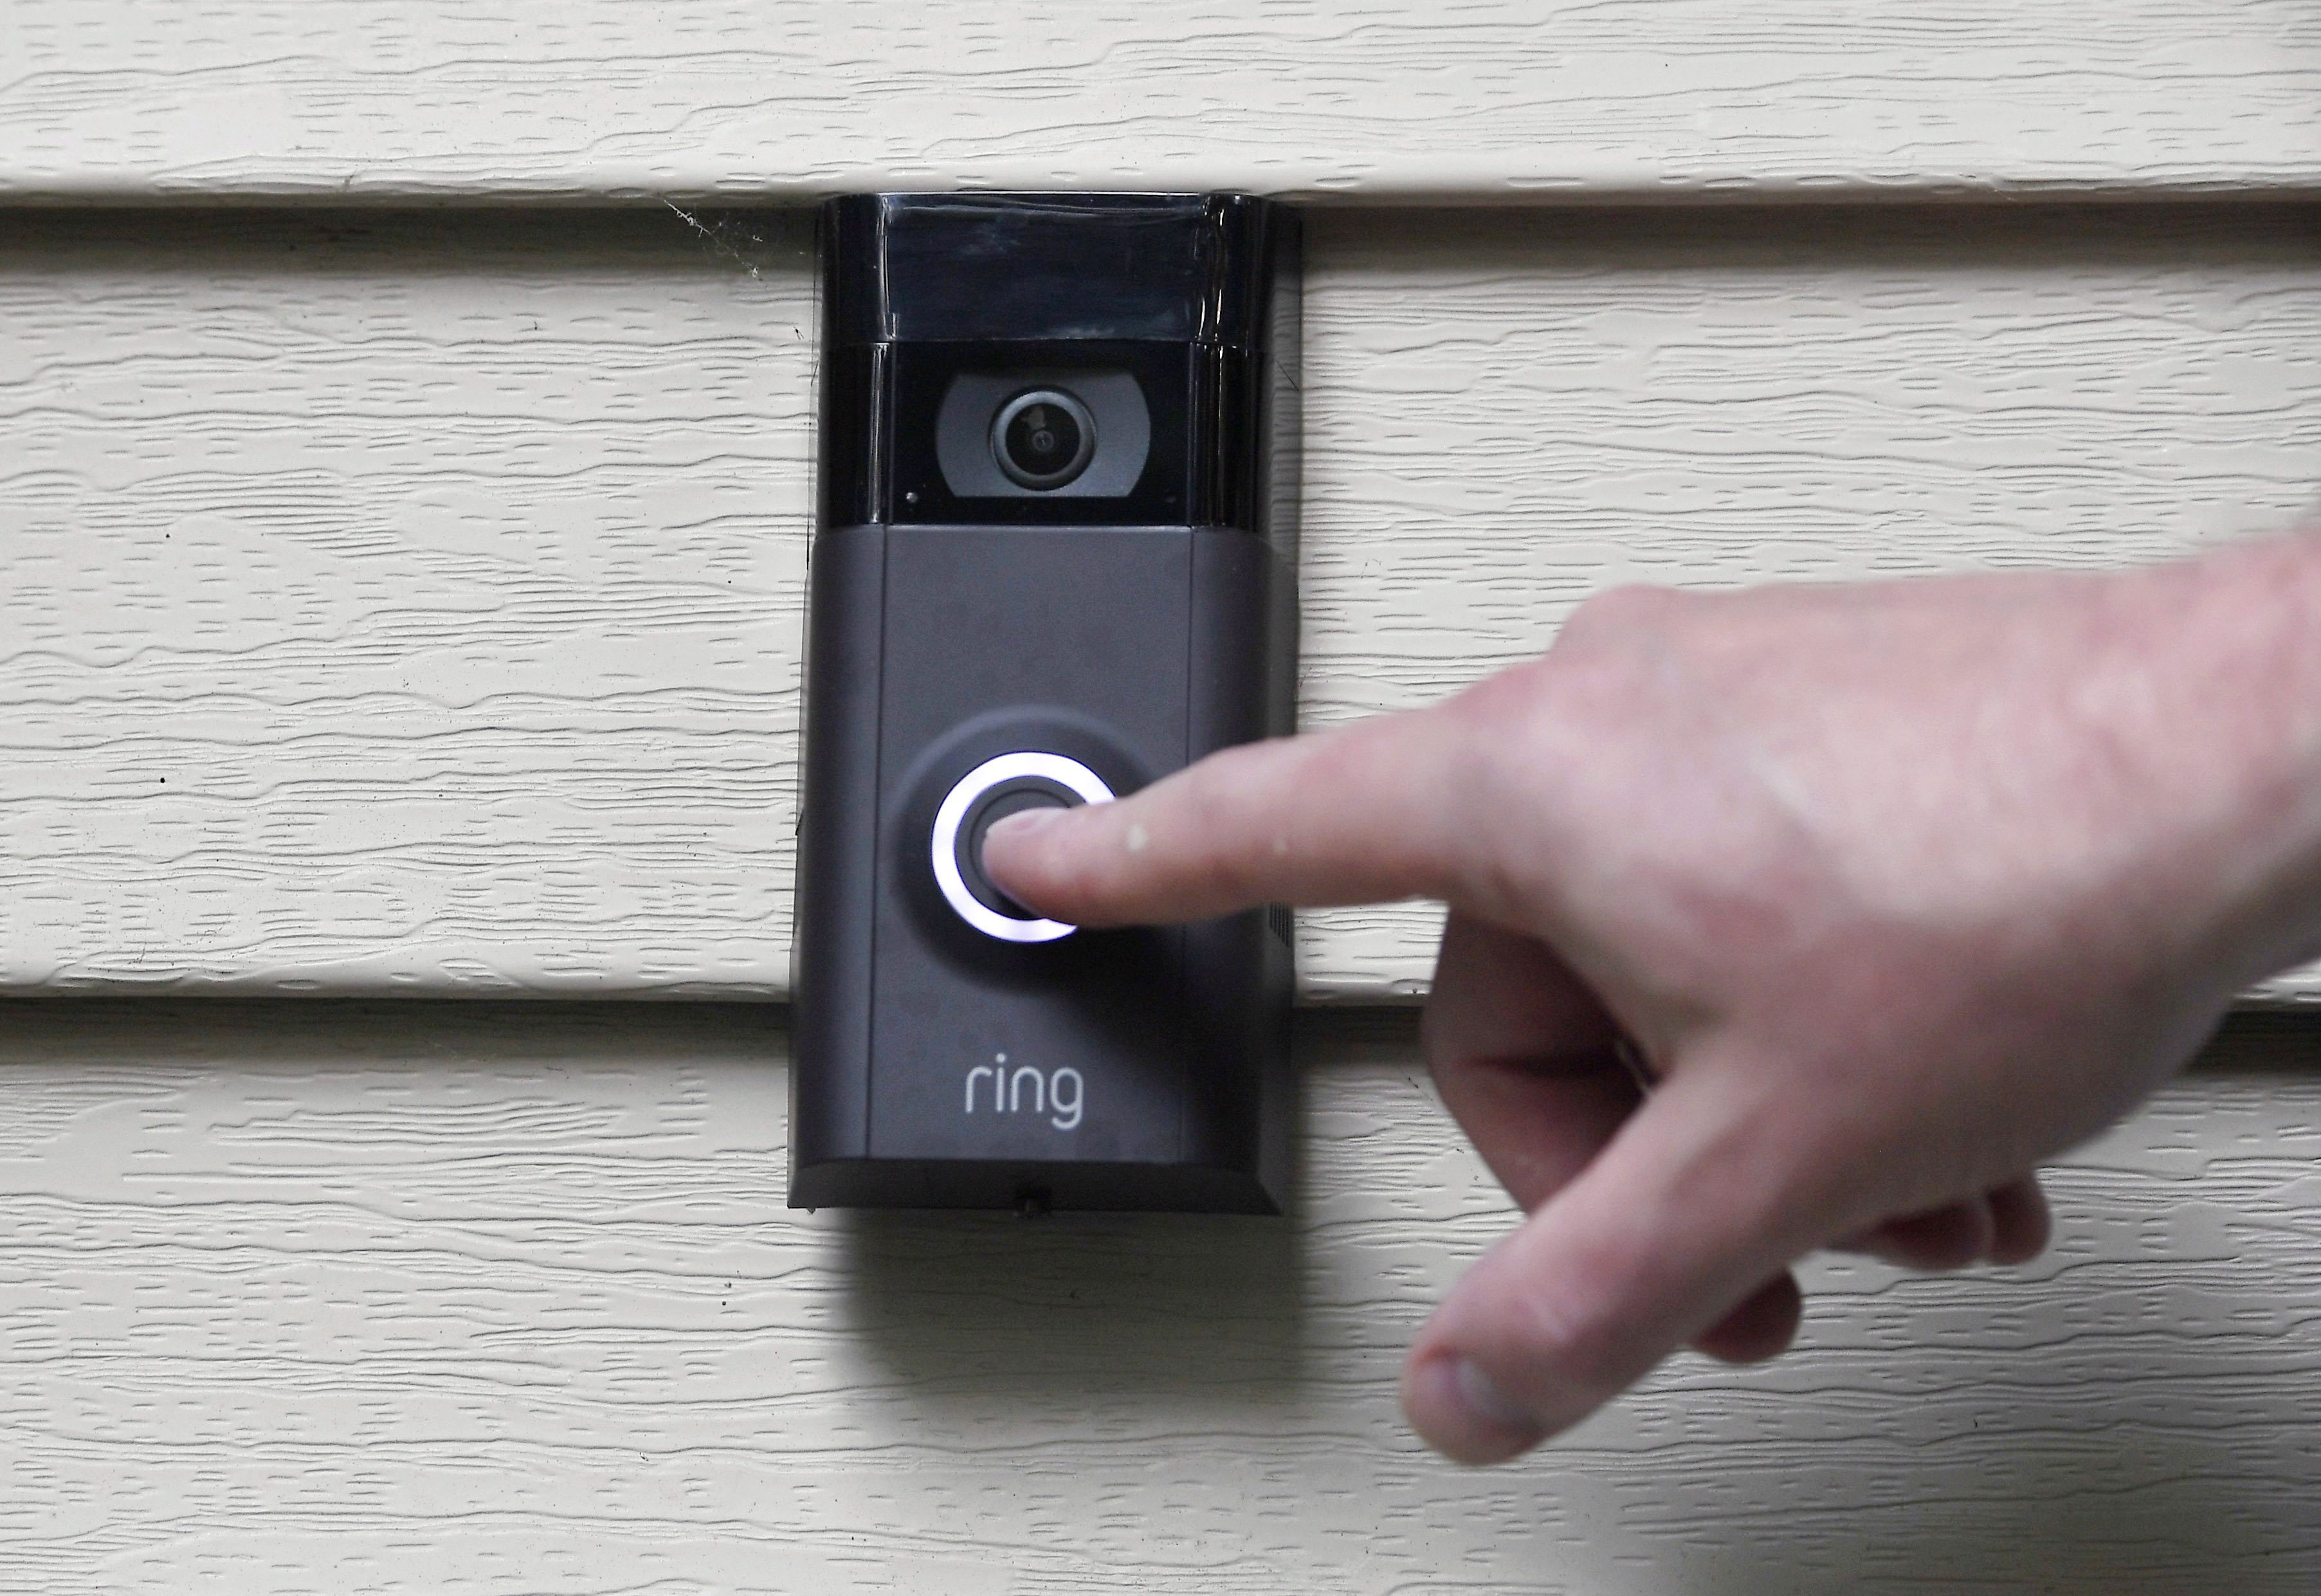 security ring doorbell